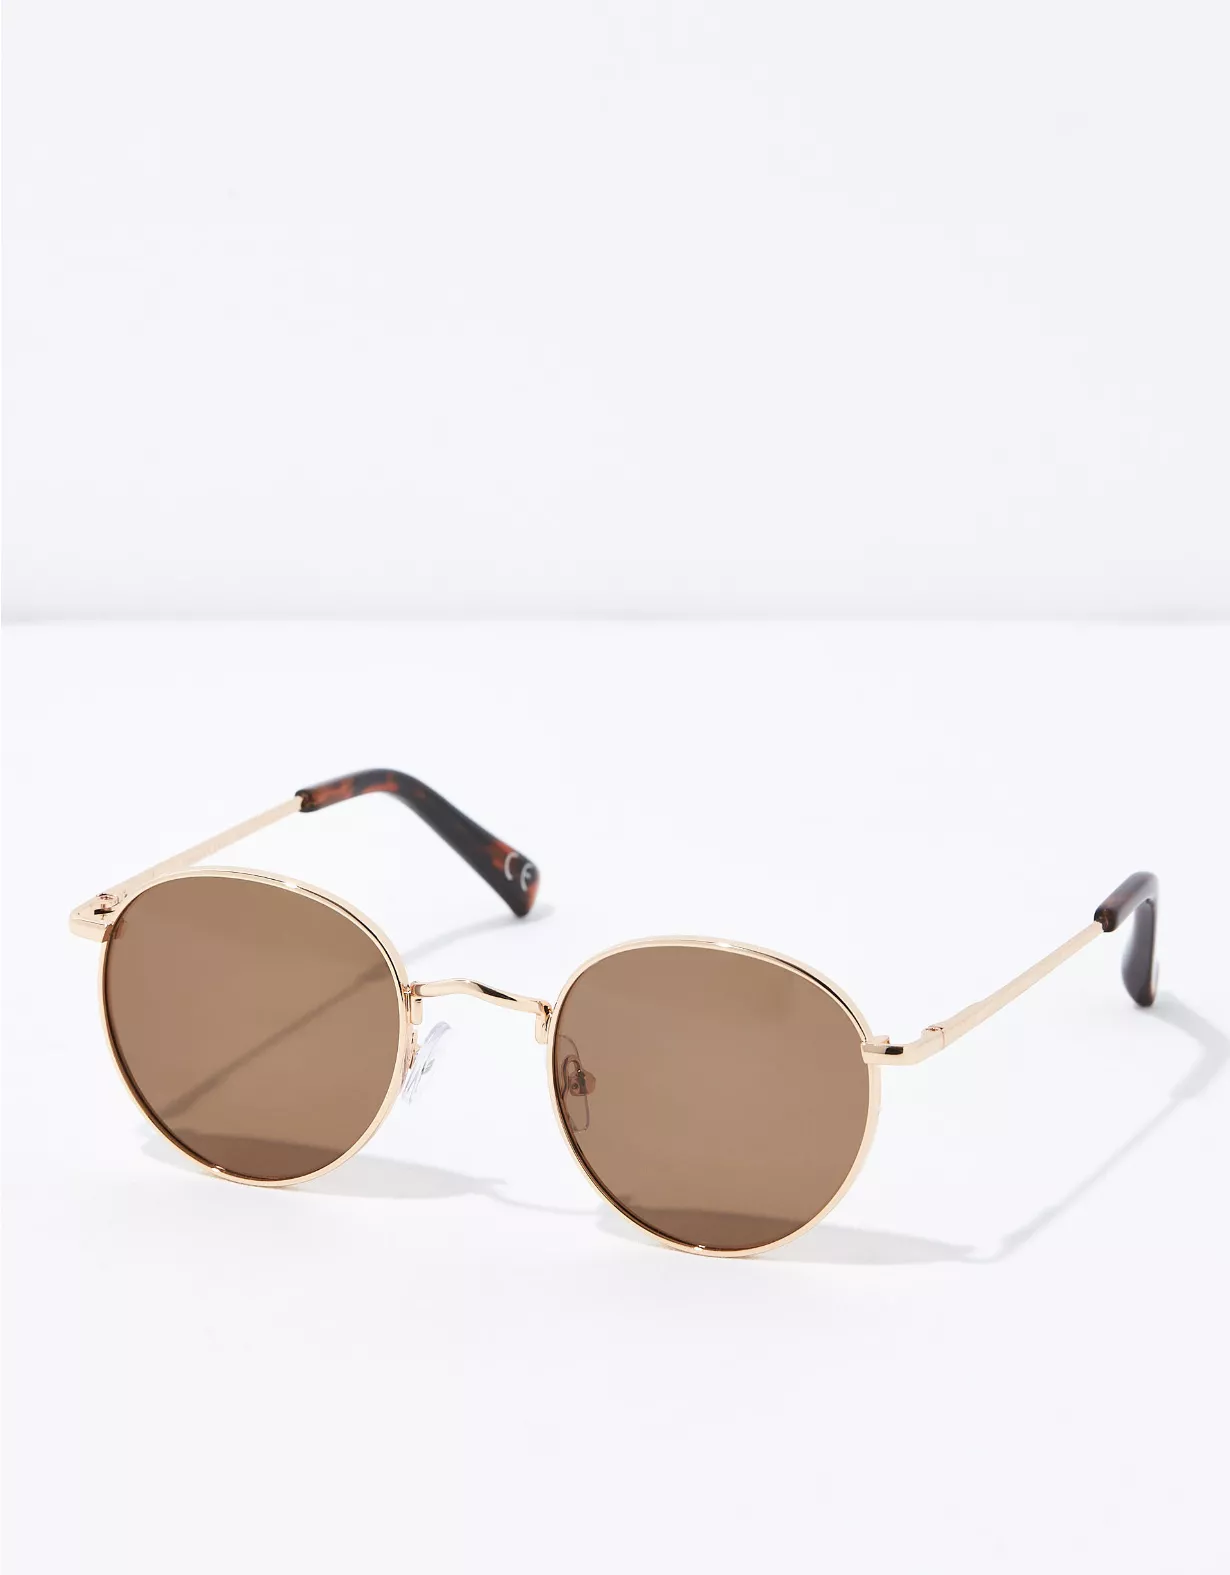 AEO Premium Metal Frame Round Sunglasses